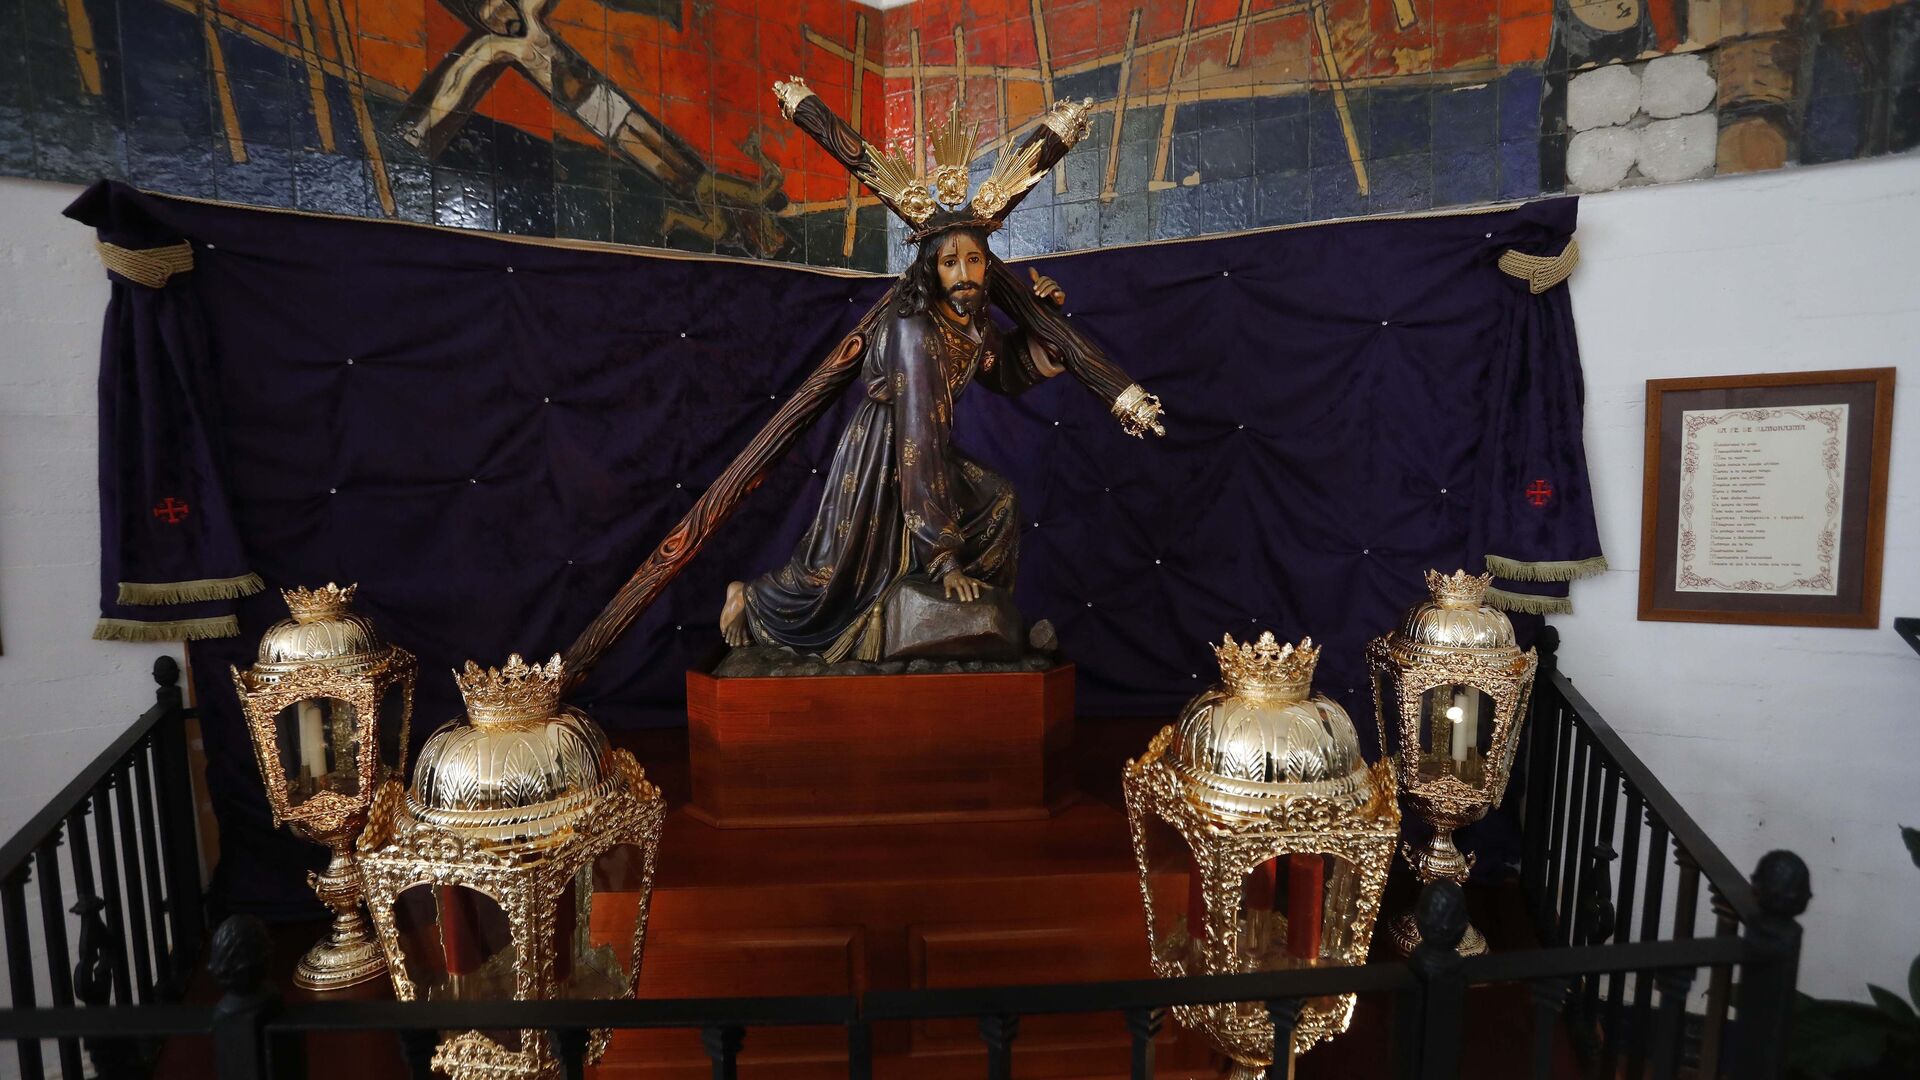 Fotos del Viernes Santo en Castellar: Cristo de la Almoraima, Nuestro Padre Jes&uacute;s Nazareno y Nuestra Se&ntilde;ora de las Angustias